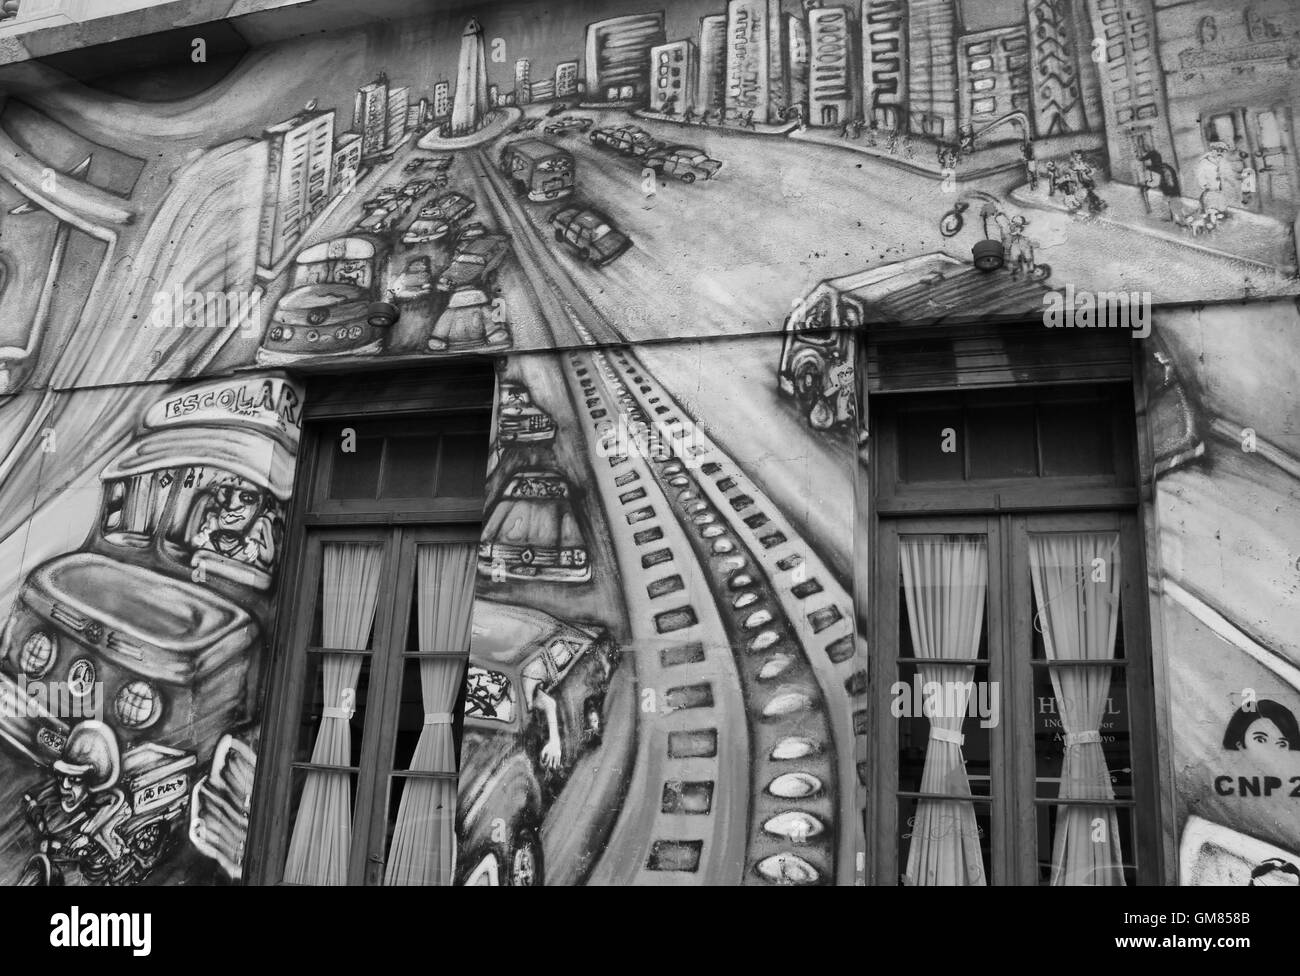 Politica Di Arte di strada (bianco e nero) - Graffiti - Buenos Aires - Argentina Foto Stock